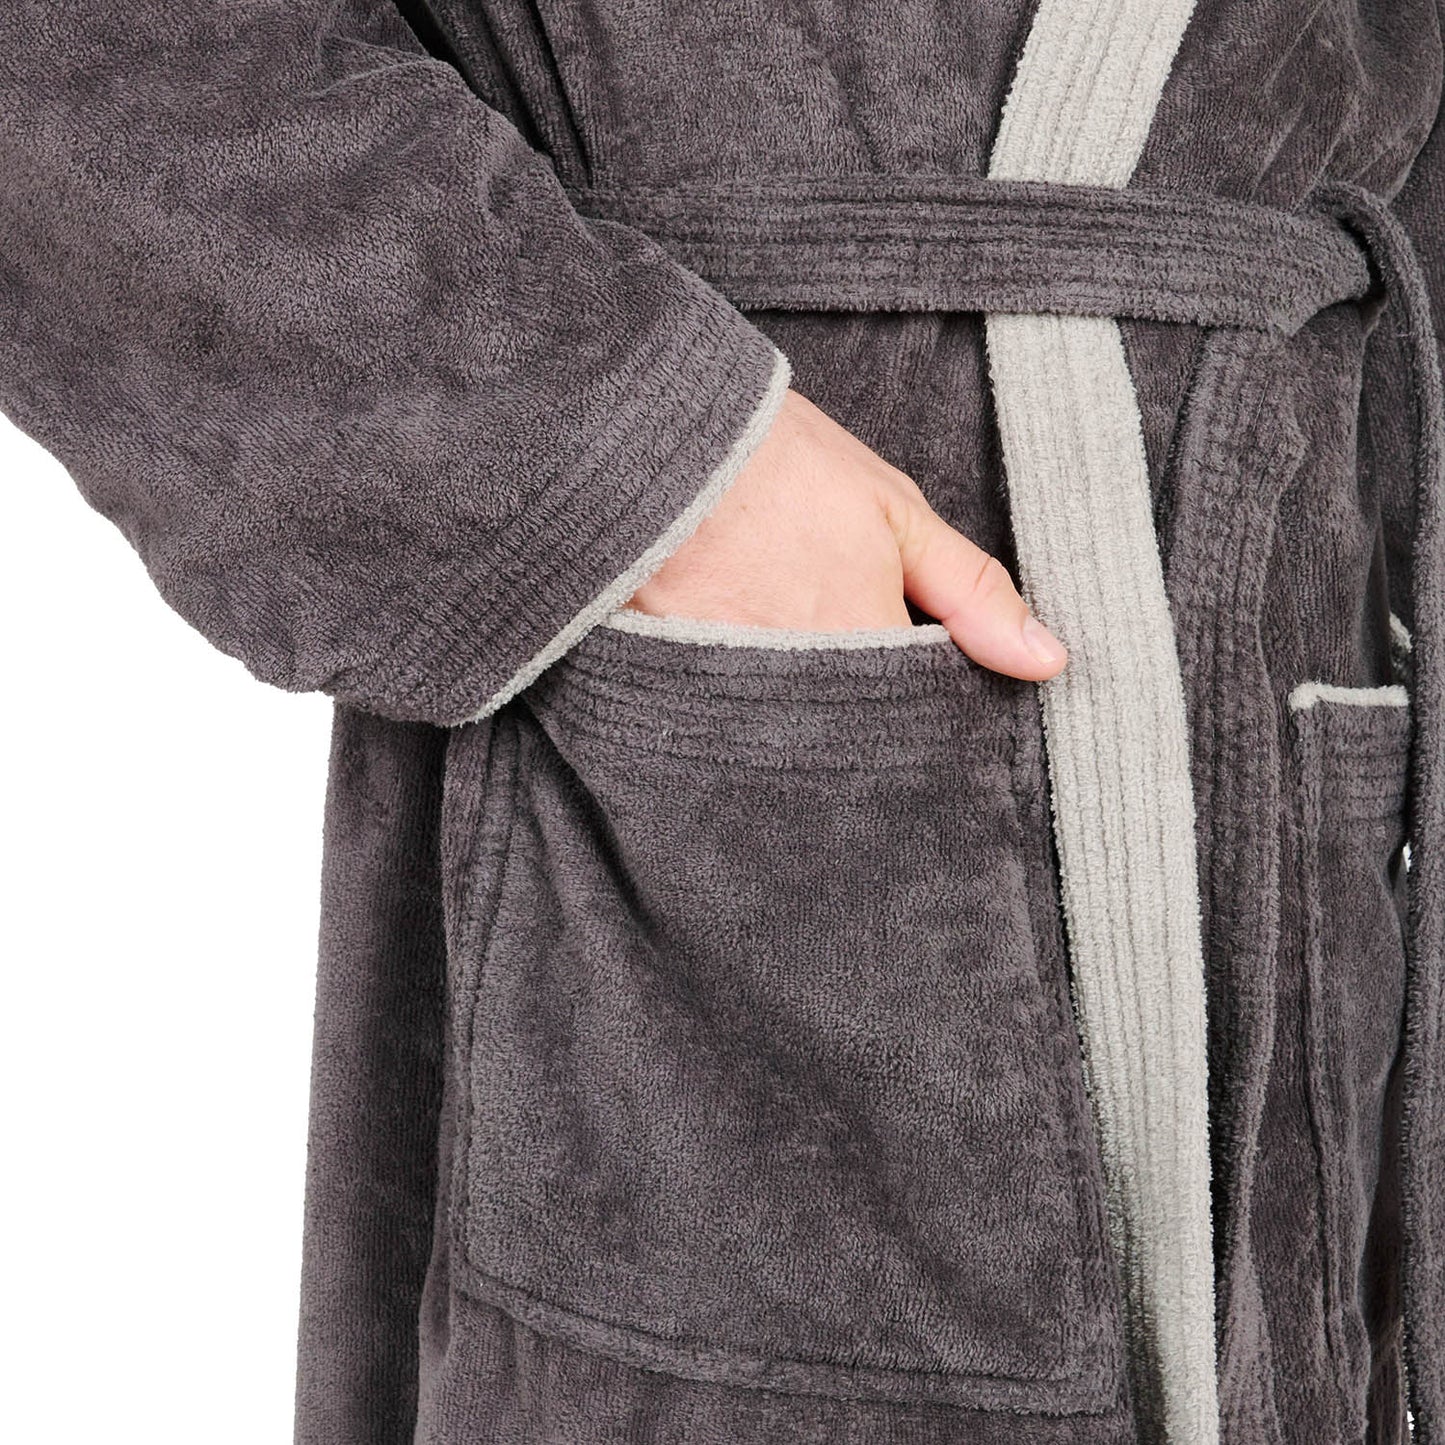 Detail der Hand in Tasche des Bademantels mit Gürtel